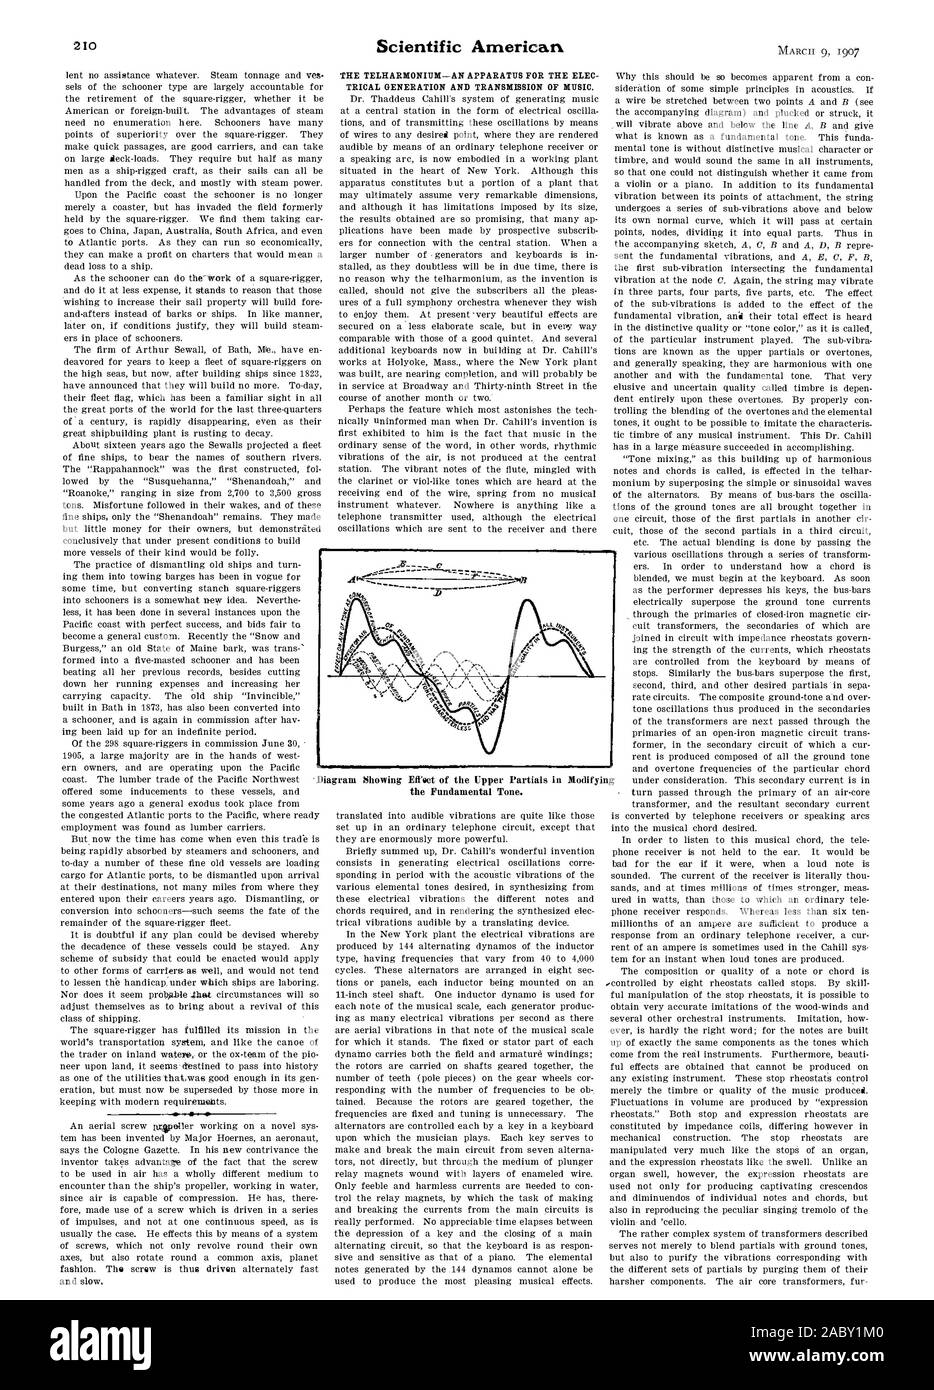 Scientific American, 1907-03-09 Stockfoto